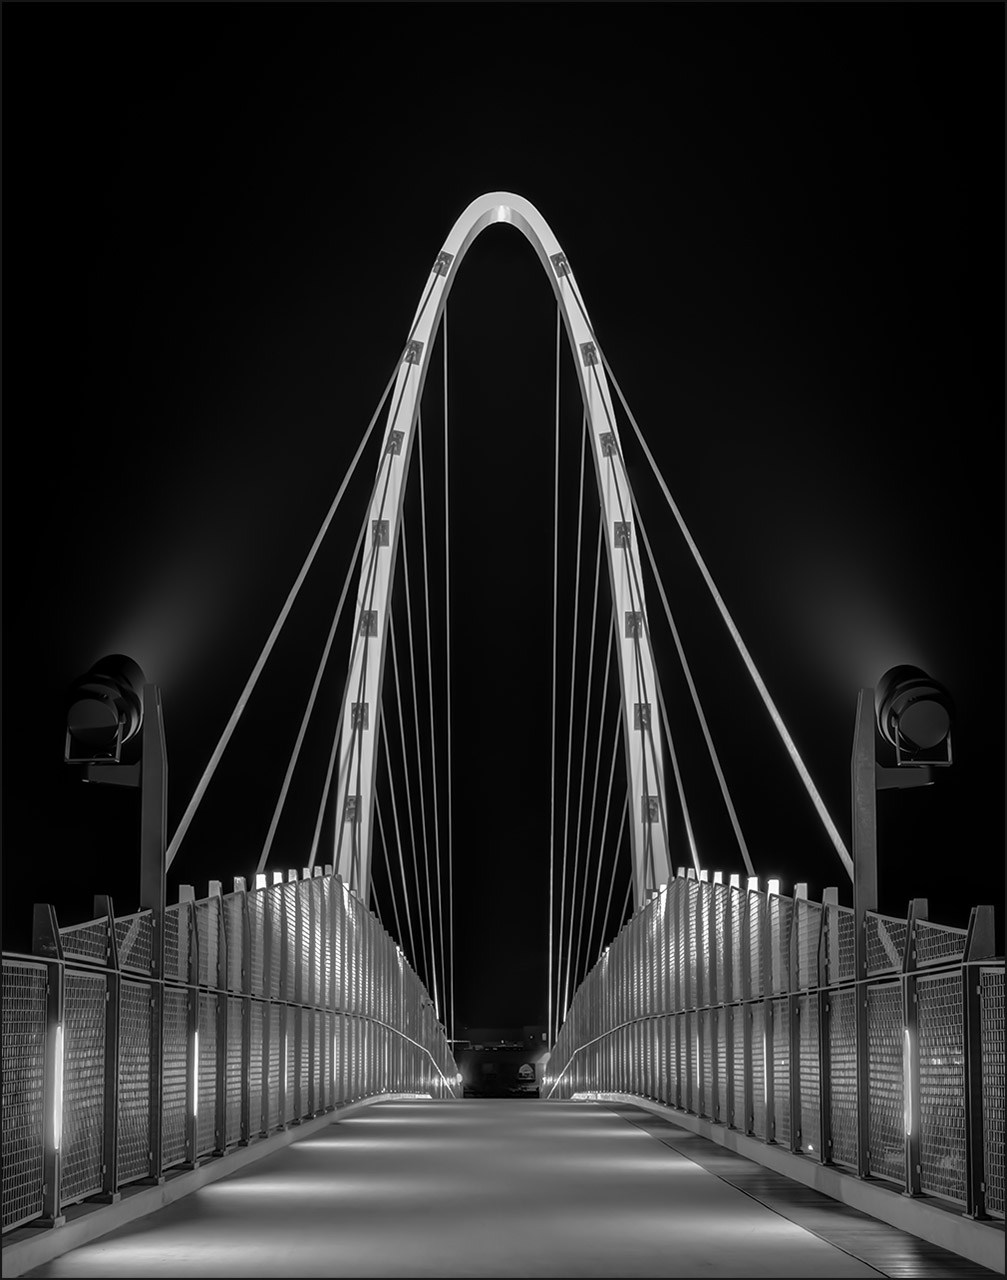 Pictorial Mono: "University District Gateway Bridge" by James White